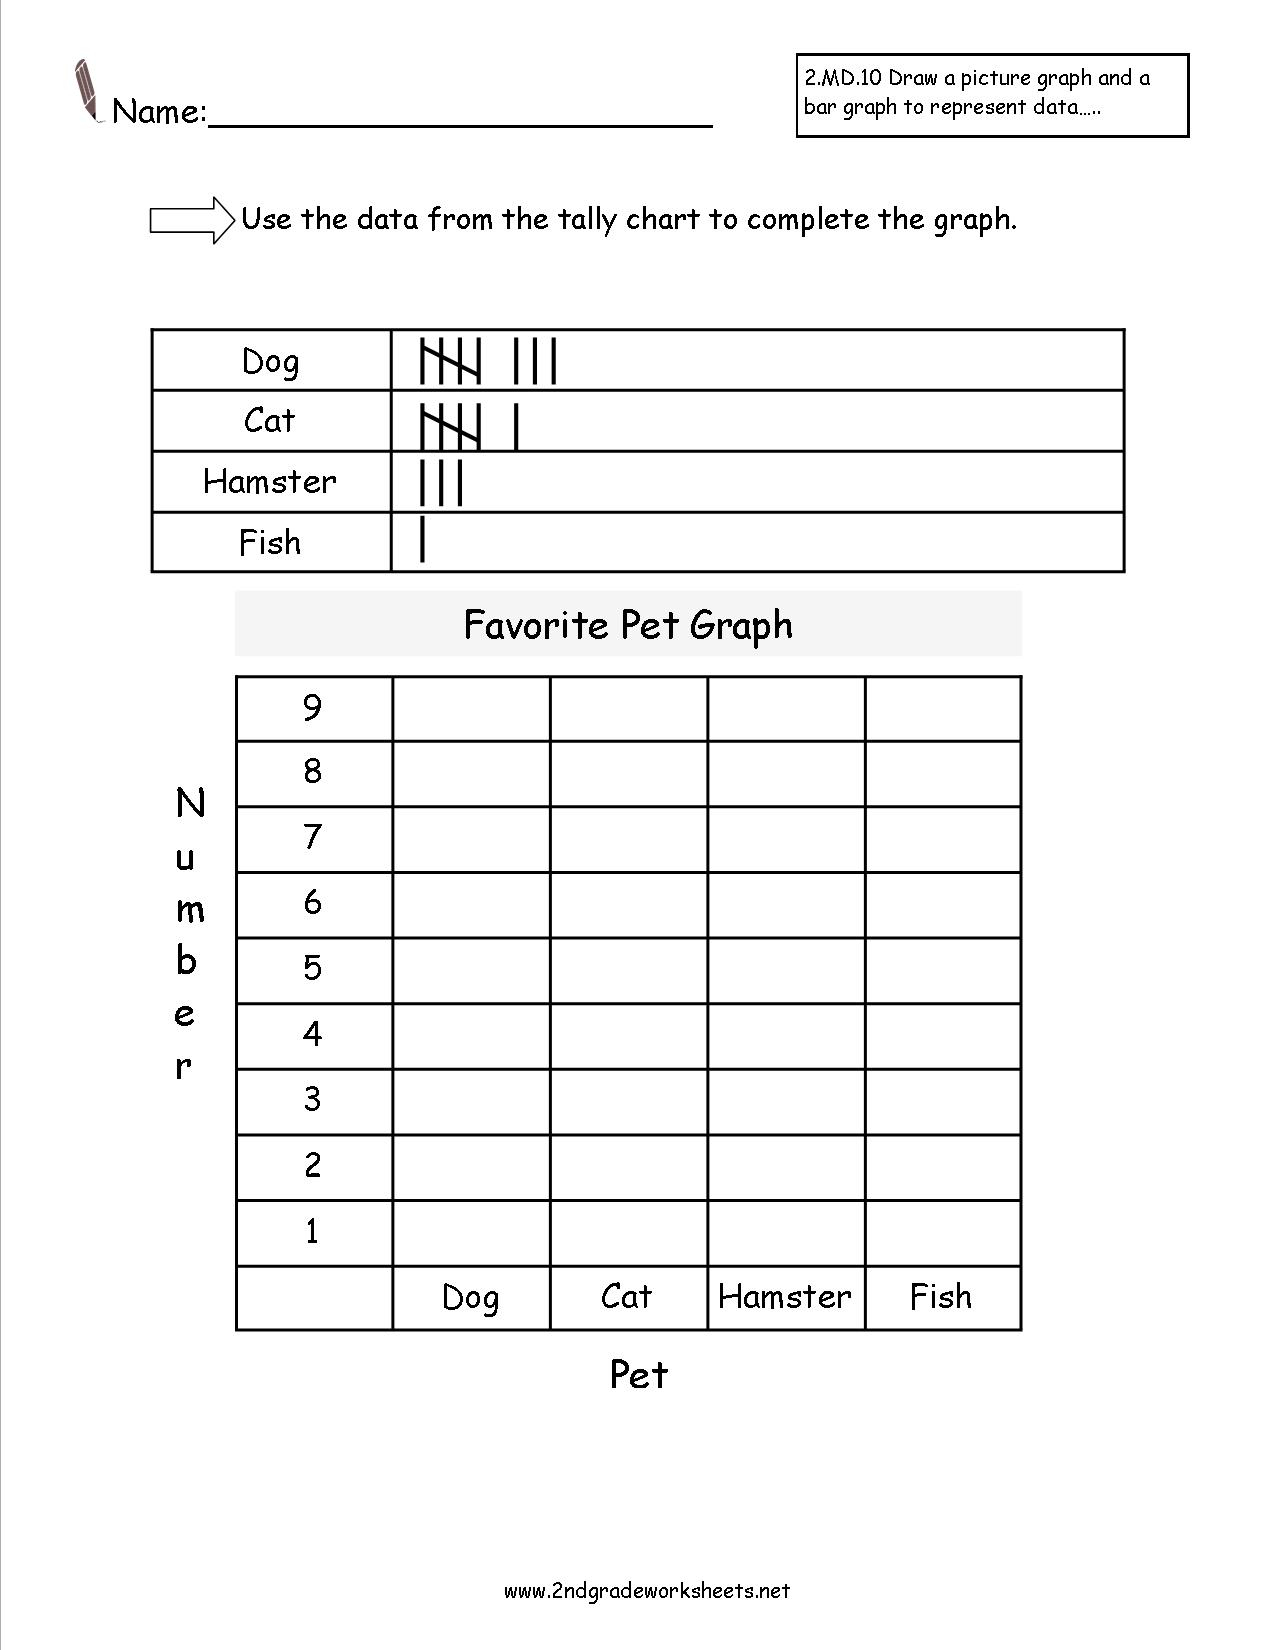 Free Reading And Creating Bar Graph Worksheets - Free Printable Bar Graph